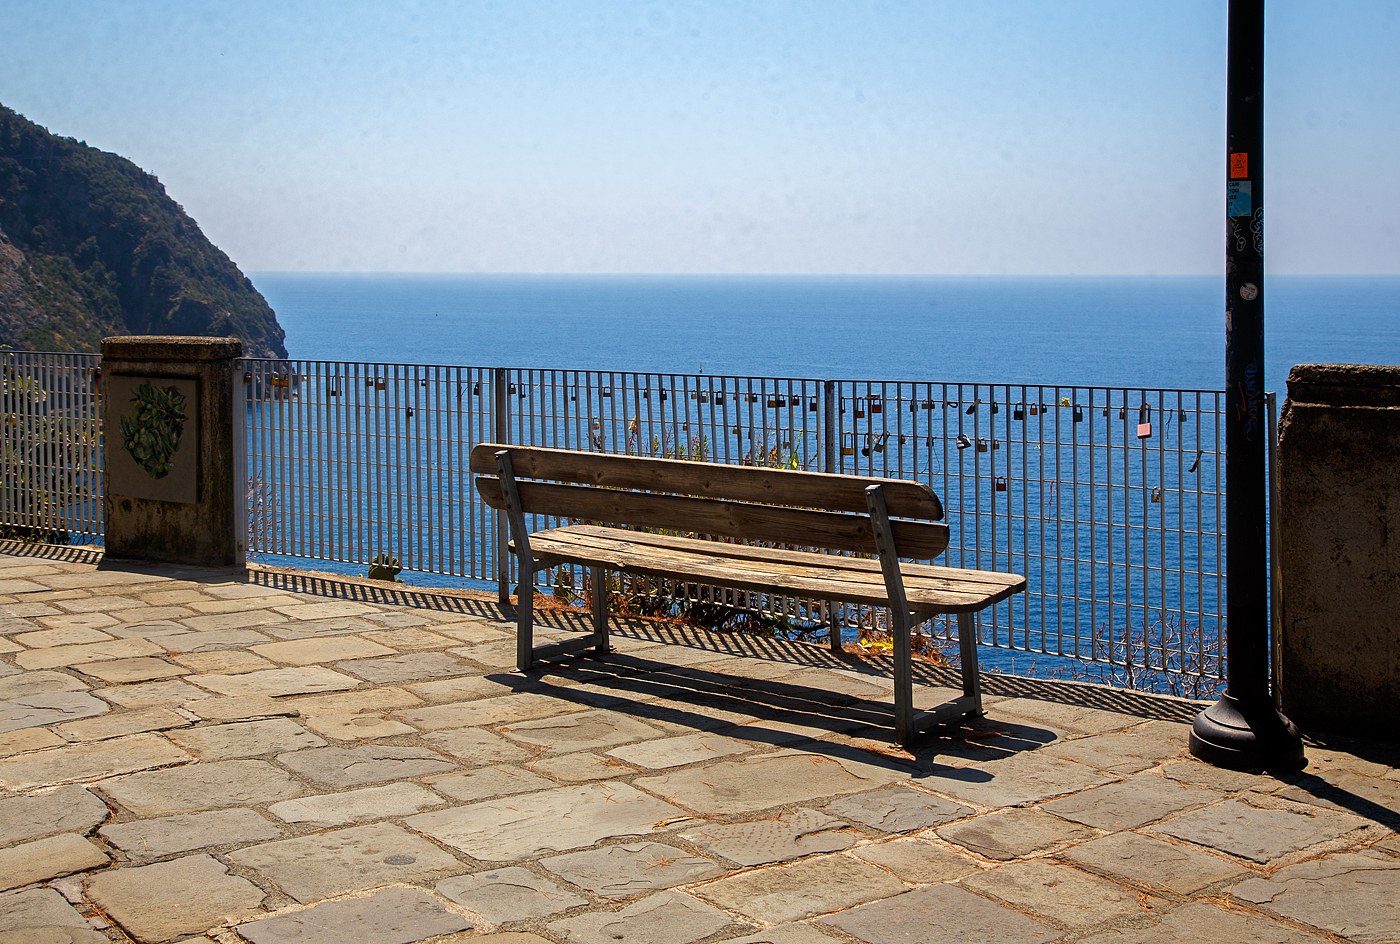 Eine OMA-Bank in Riomaggiore (Cinque Terre) mit einer wunderschönen Aussicht auf und übers Mittelmeer, hier am 21.07.2022. Nur für meine Frau ist die Bank nichts auch wenn hier ein Geländer ist, denn dahinter ist ein sehr tiefer Abhang (Klippe).